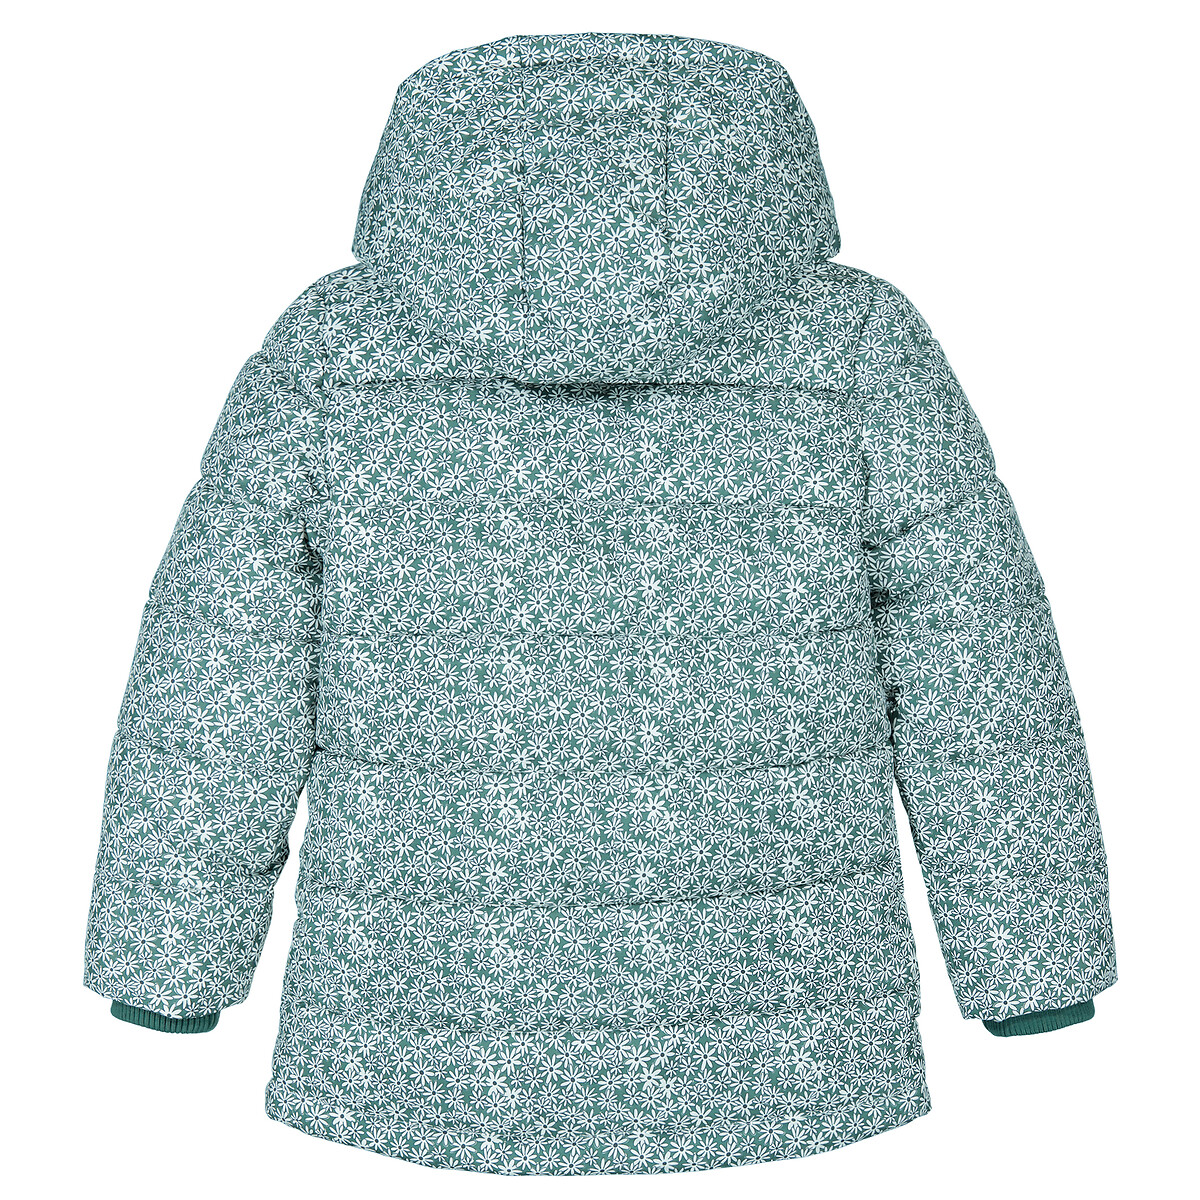 Куртка Стеганая утепленная с капюшоном цветочный принт 6 лет - 114 см зеленый LaRedoute, размер 6 лет - 114 см - фото 4